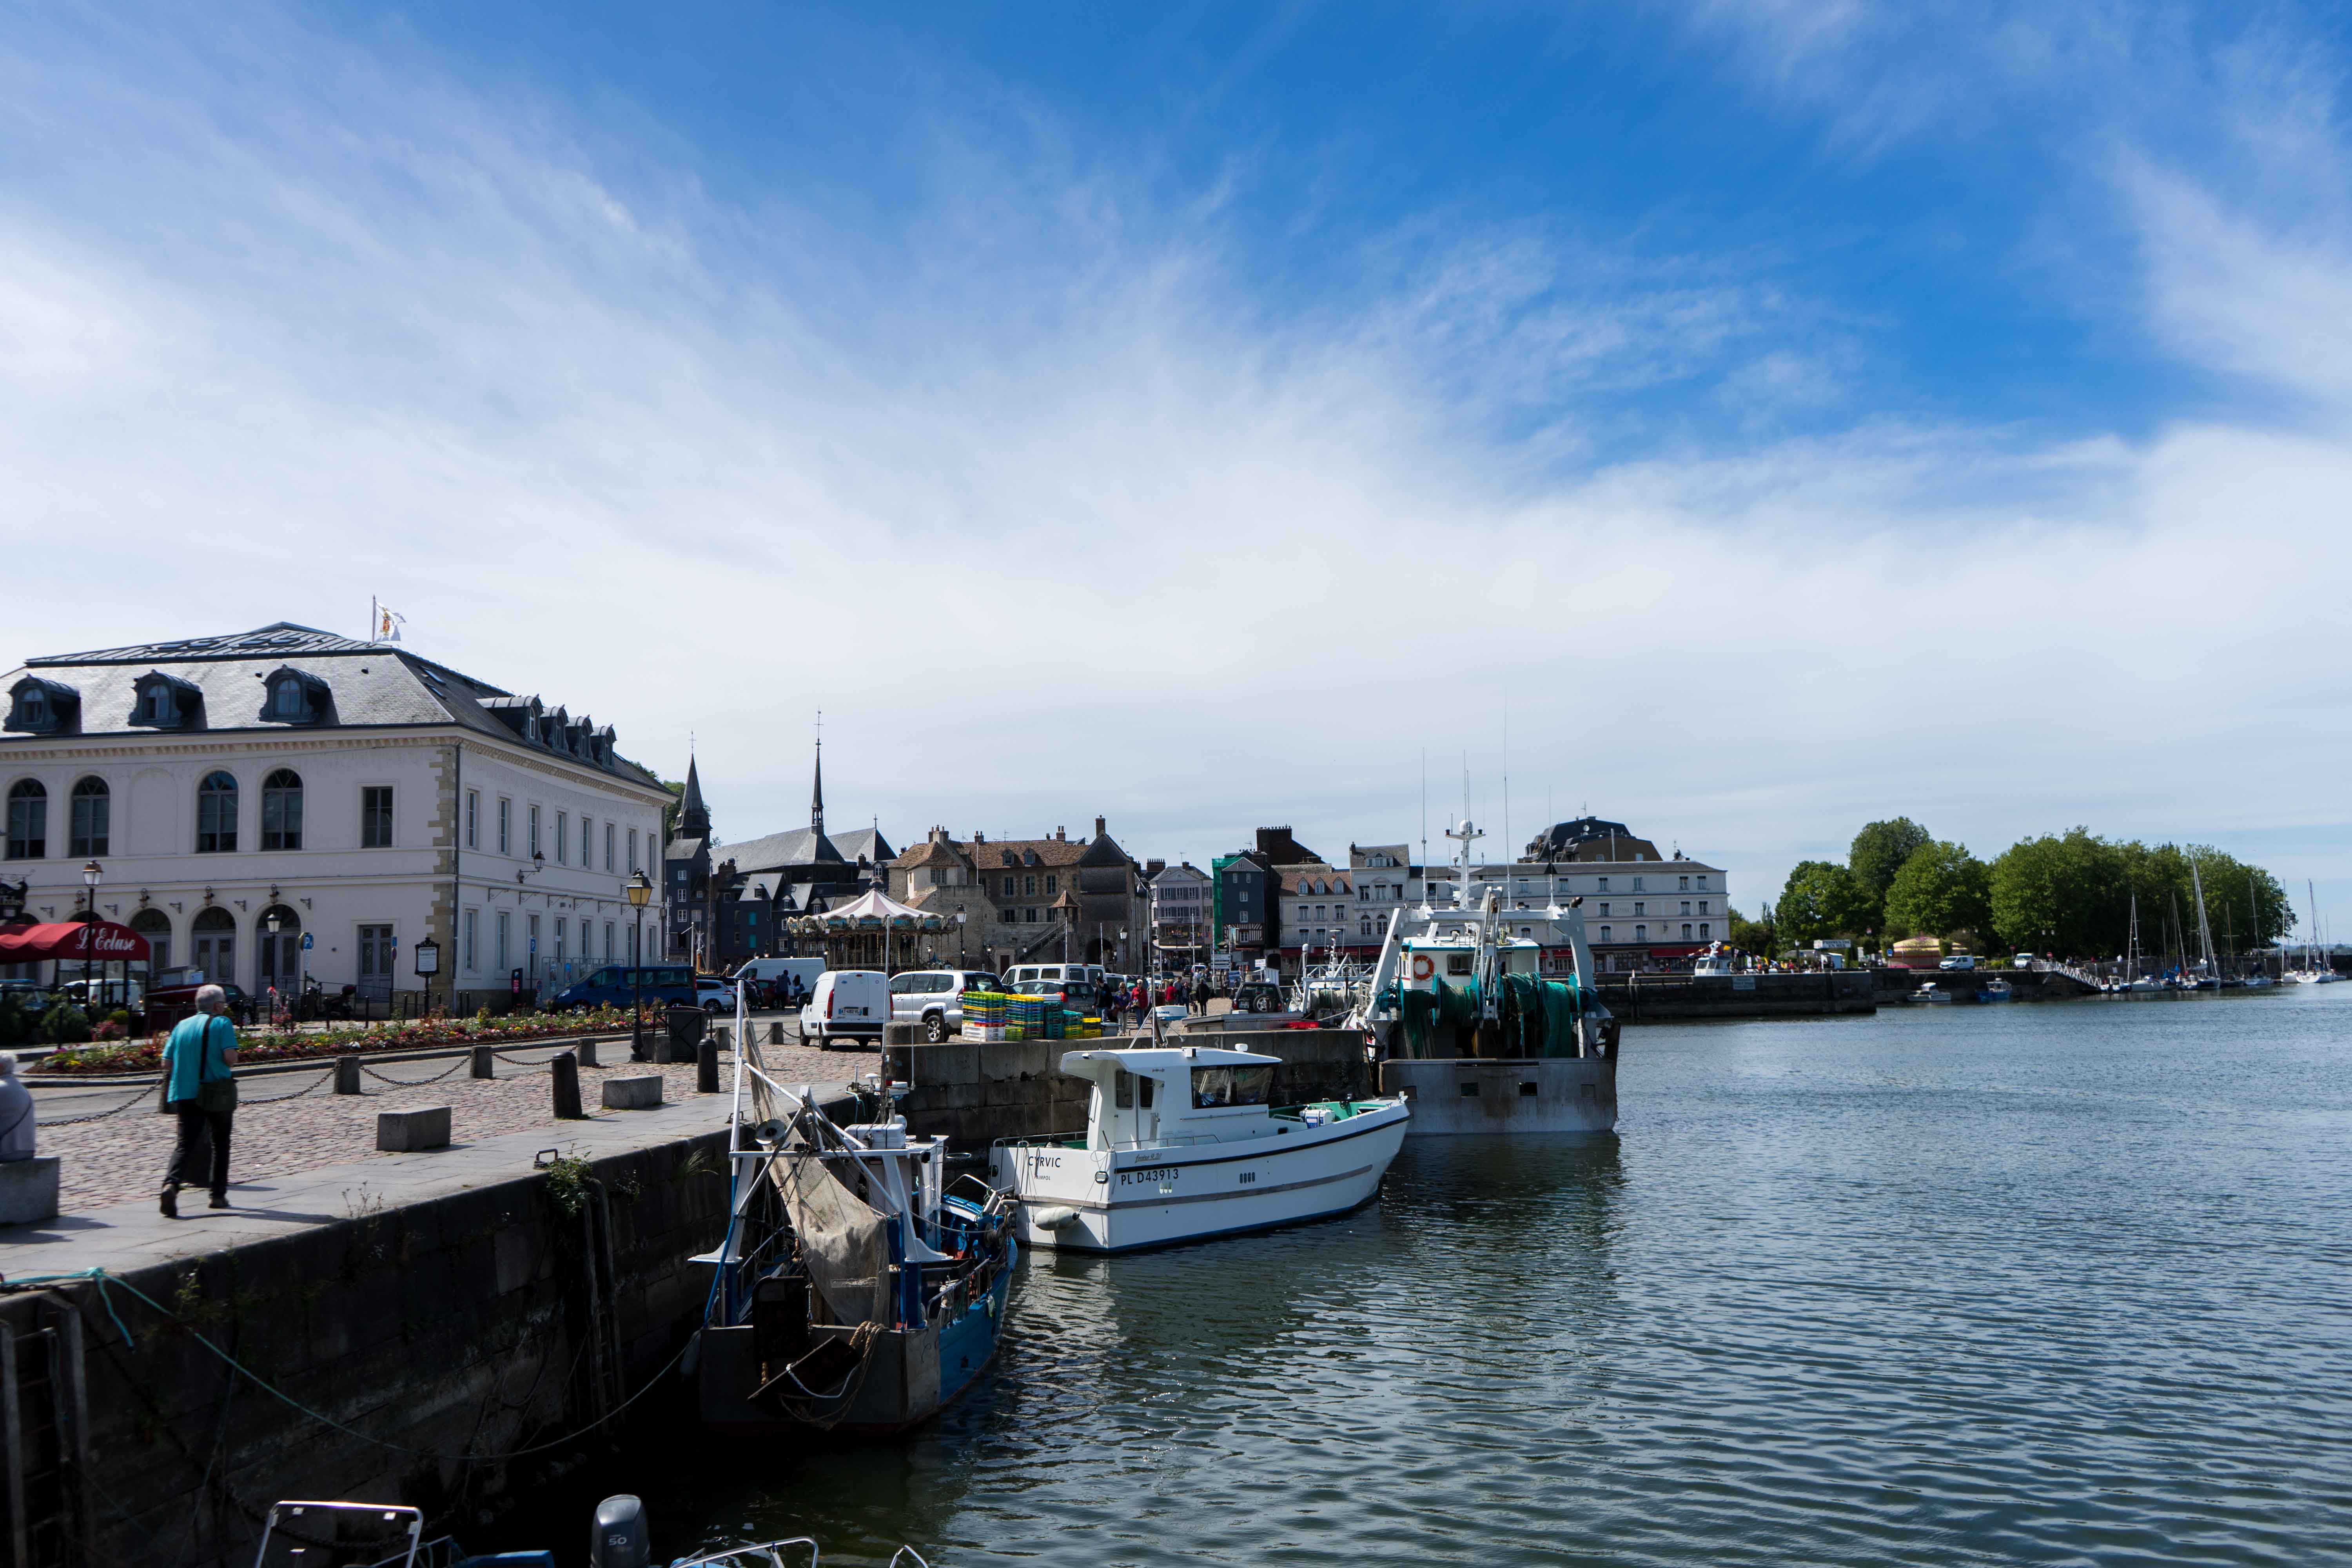 Hafen Honfleur Tipps Normandie Rundreise beste Reiseroute Seine Flusskreuzfahrt AROSA Sehenswürdigkeiten Sightseeing Reiseblog